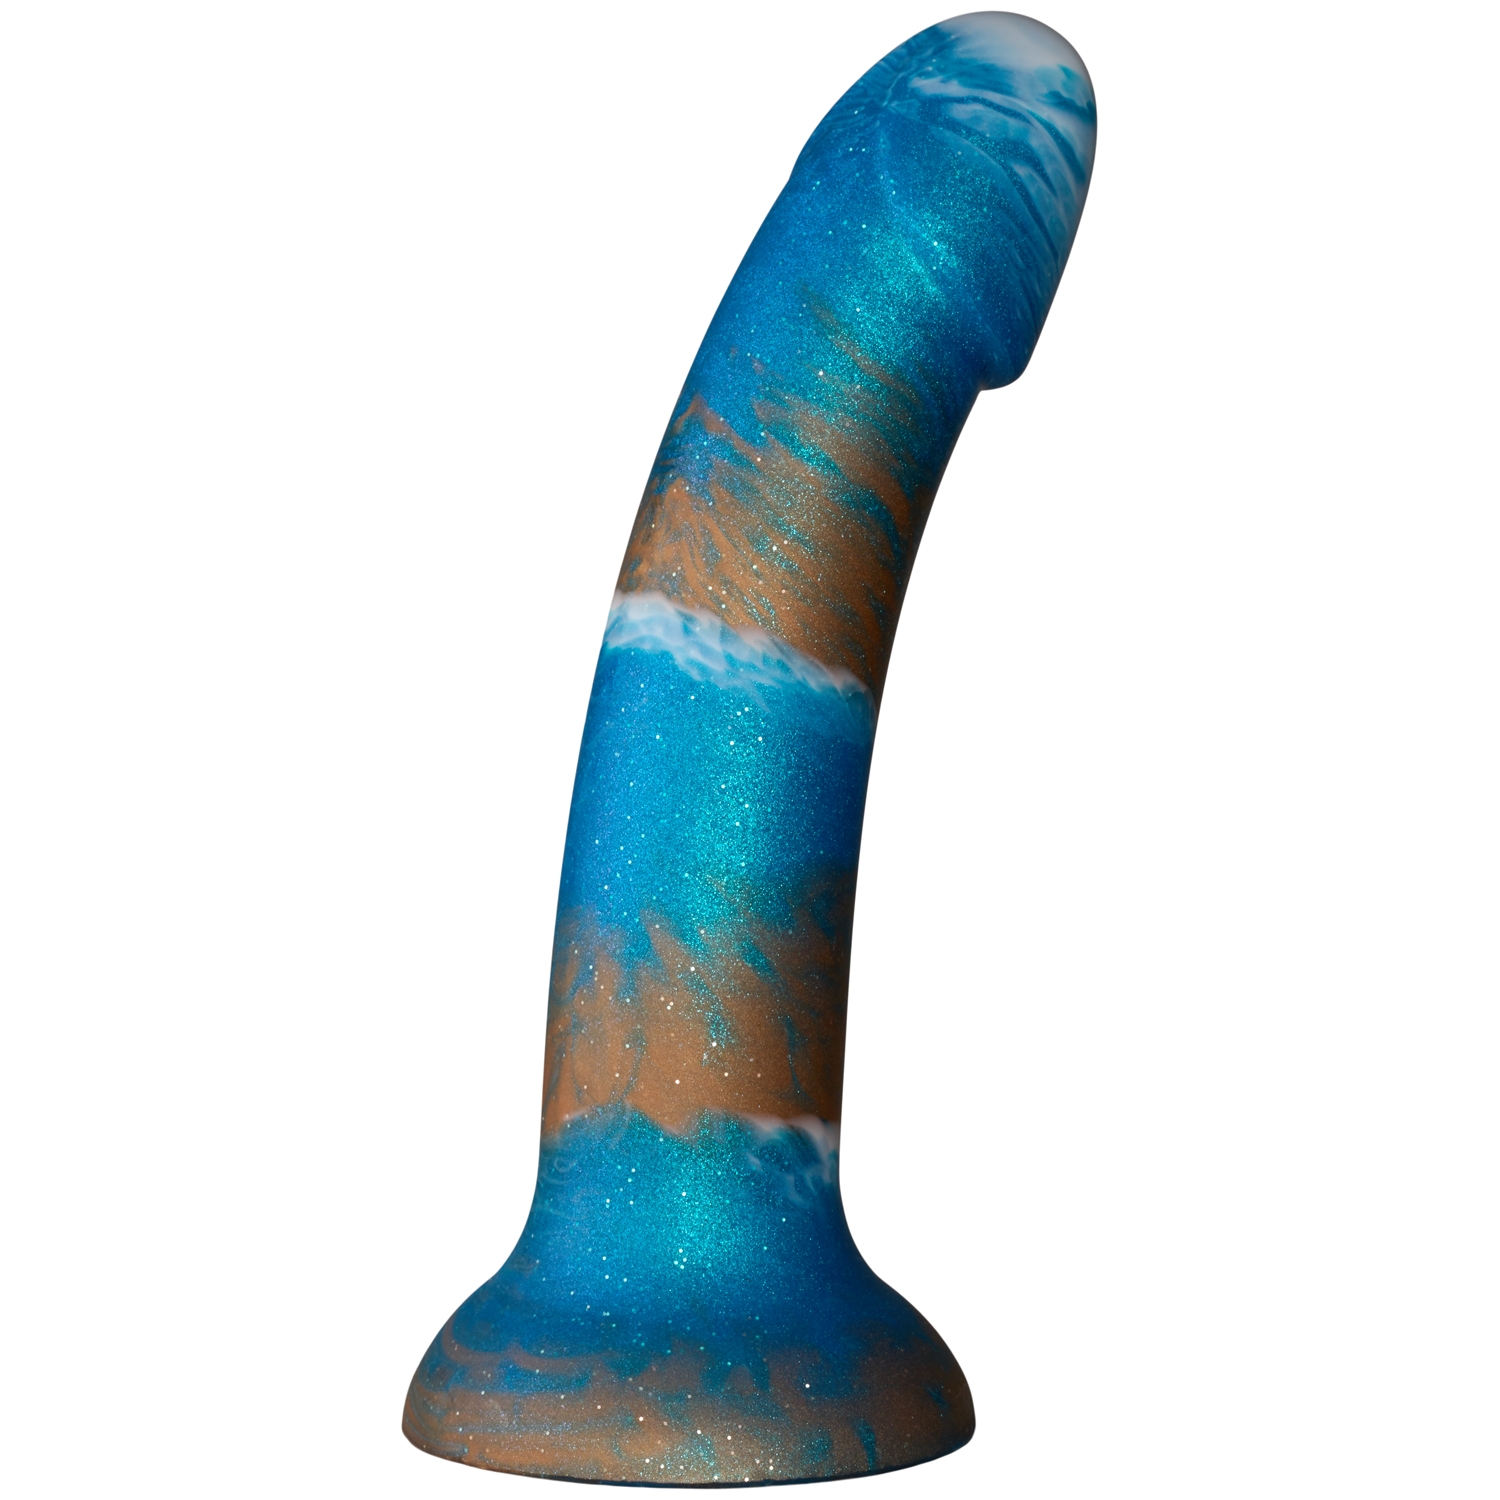 baseks baseks Copper Blue Silikondildo 18 cm - Blå